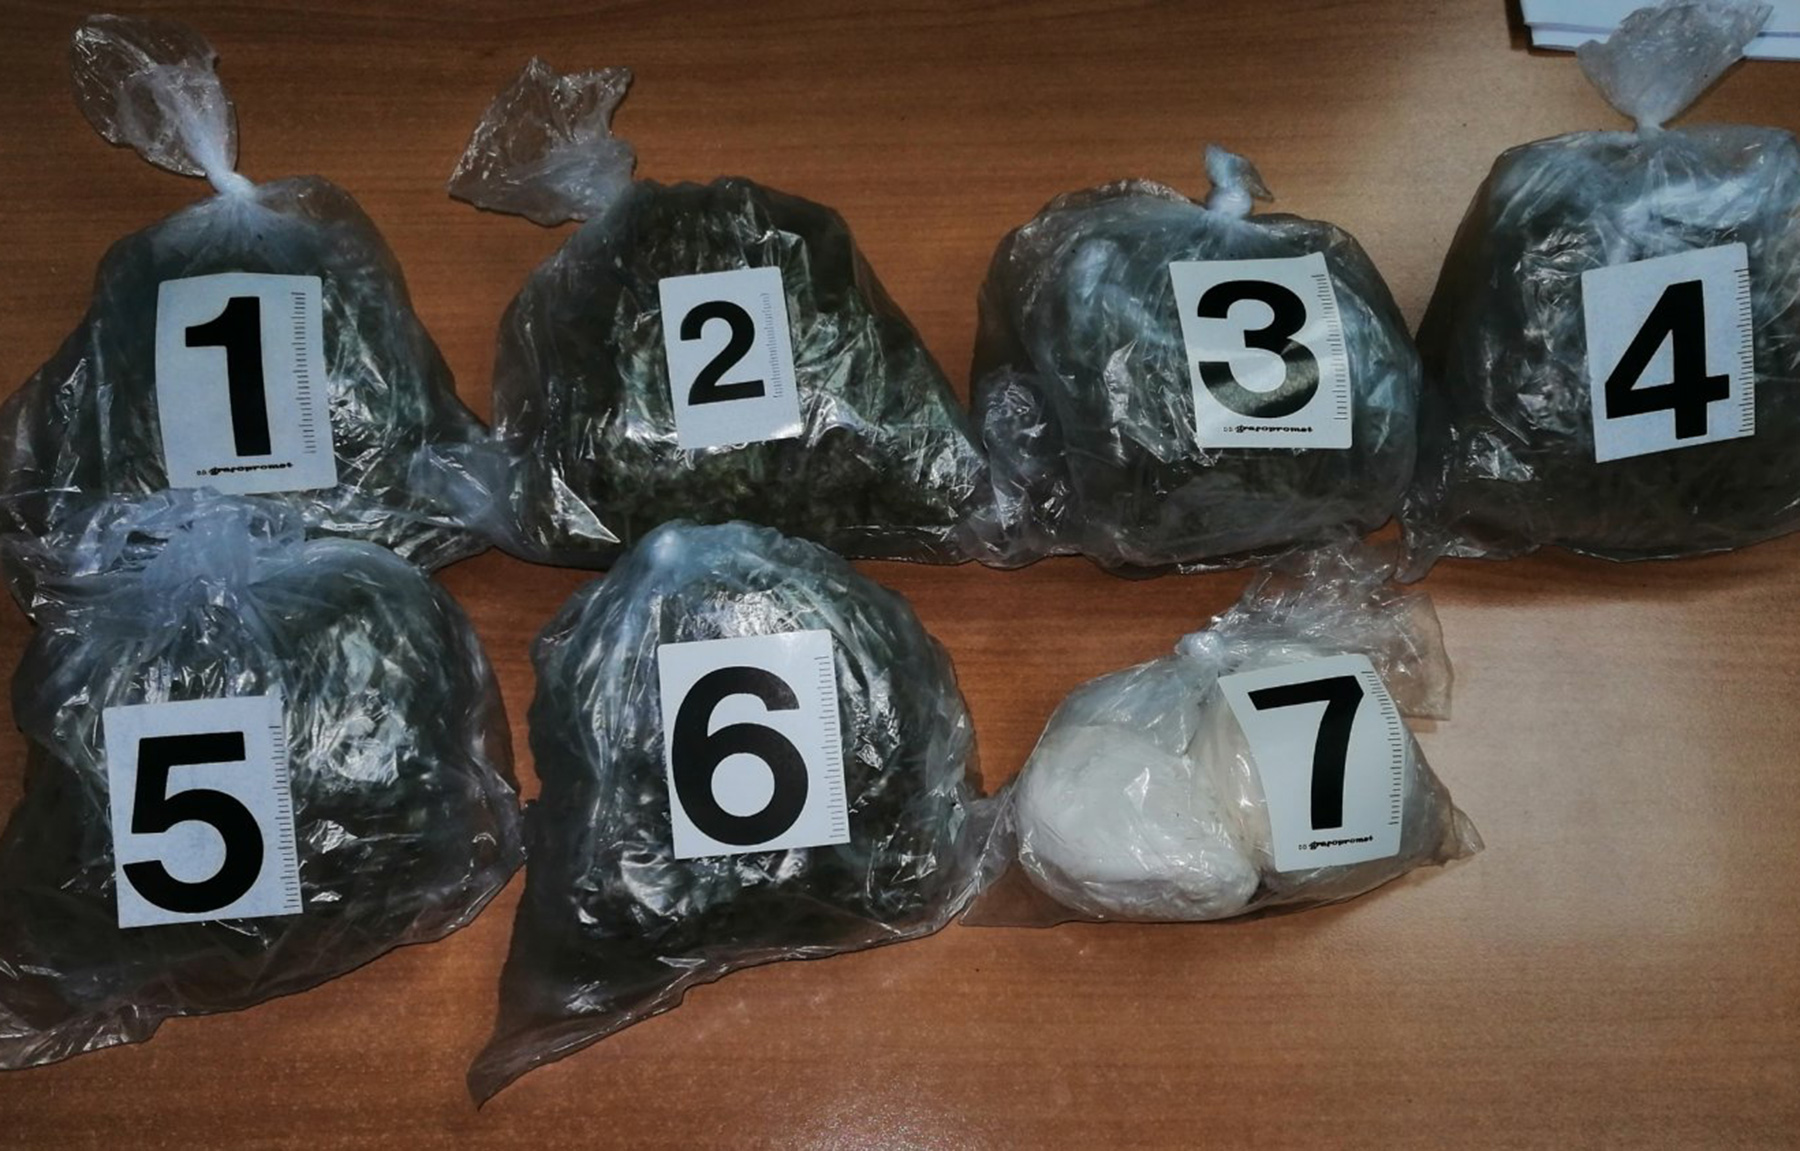 Полиција пронашла 318 грама марихуане и 206 грама амфетамина у аутомобилу осумњиченог